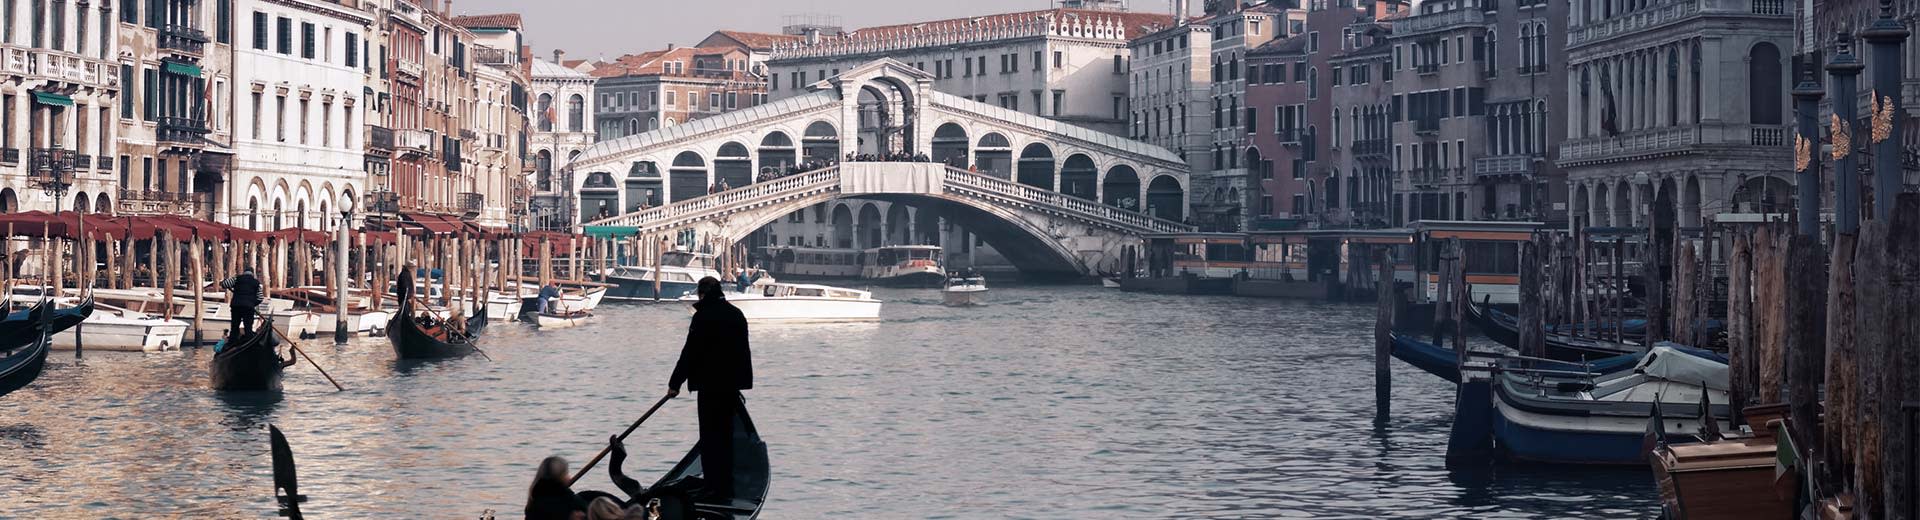 Les voies navigables de Venise sont pleines de gondoles et de leurs passagers, tandis qu'en arrière-plan se trouve une belle architecture.	